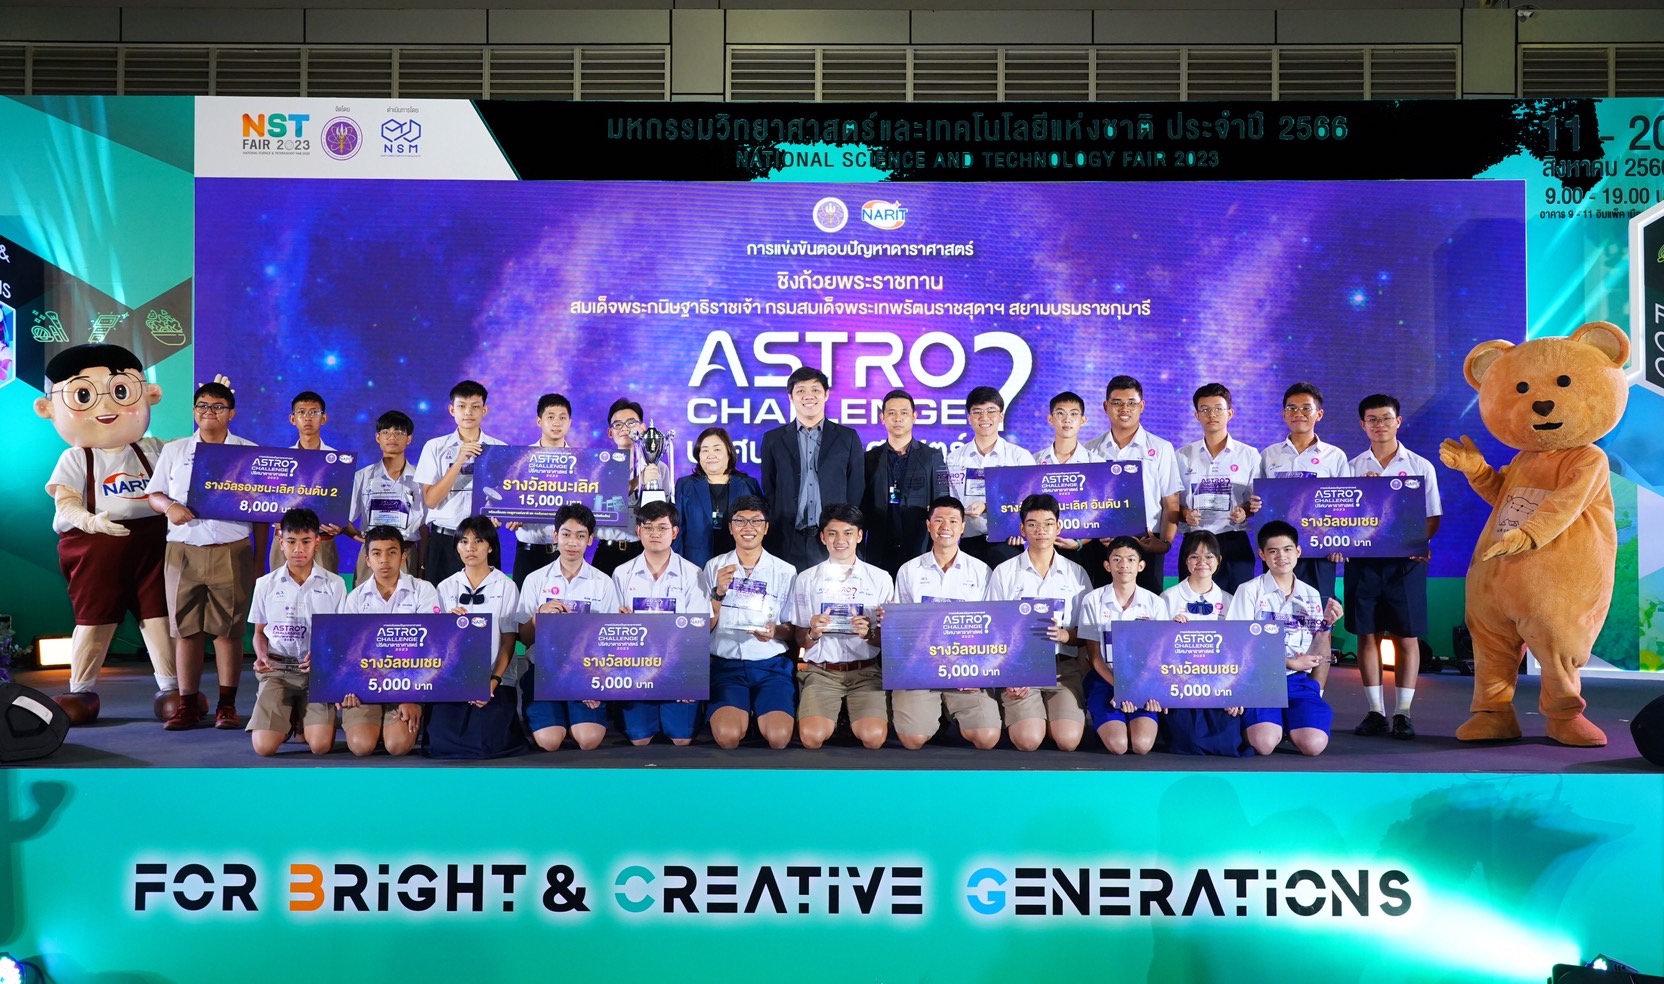 ทีม Kaffaljidhma รร.สวนกุหลาบวิทยาลัย คว้ารางวัลสุดยอดเยาวชนคนดาราศาสตร์“Astro Challenge : ปริศนาดาราศาสตร์” ประจำปี 2566”